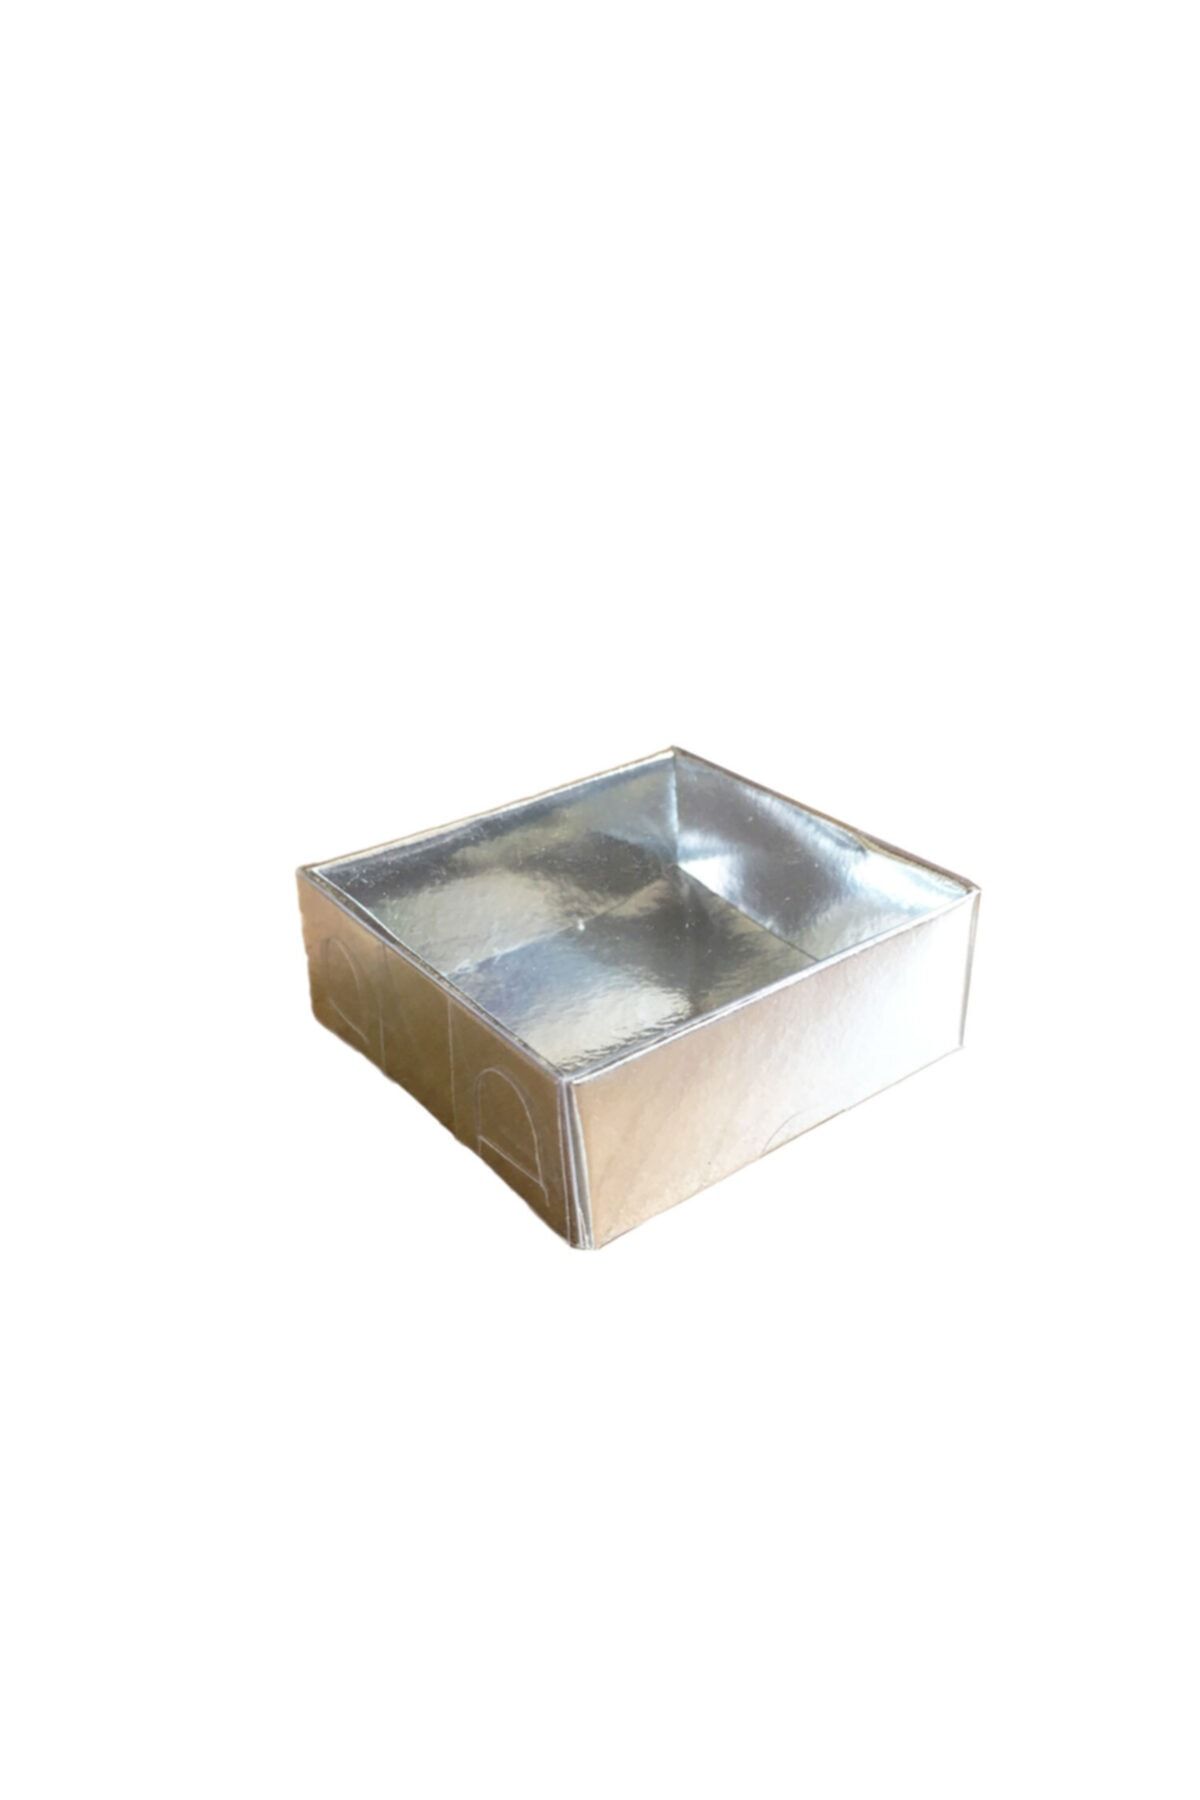 TT Tahtakale Toptancıları Asetat Kapaklı Karton Kutu 6x6x2.5 cm 50 Adet Gümüş